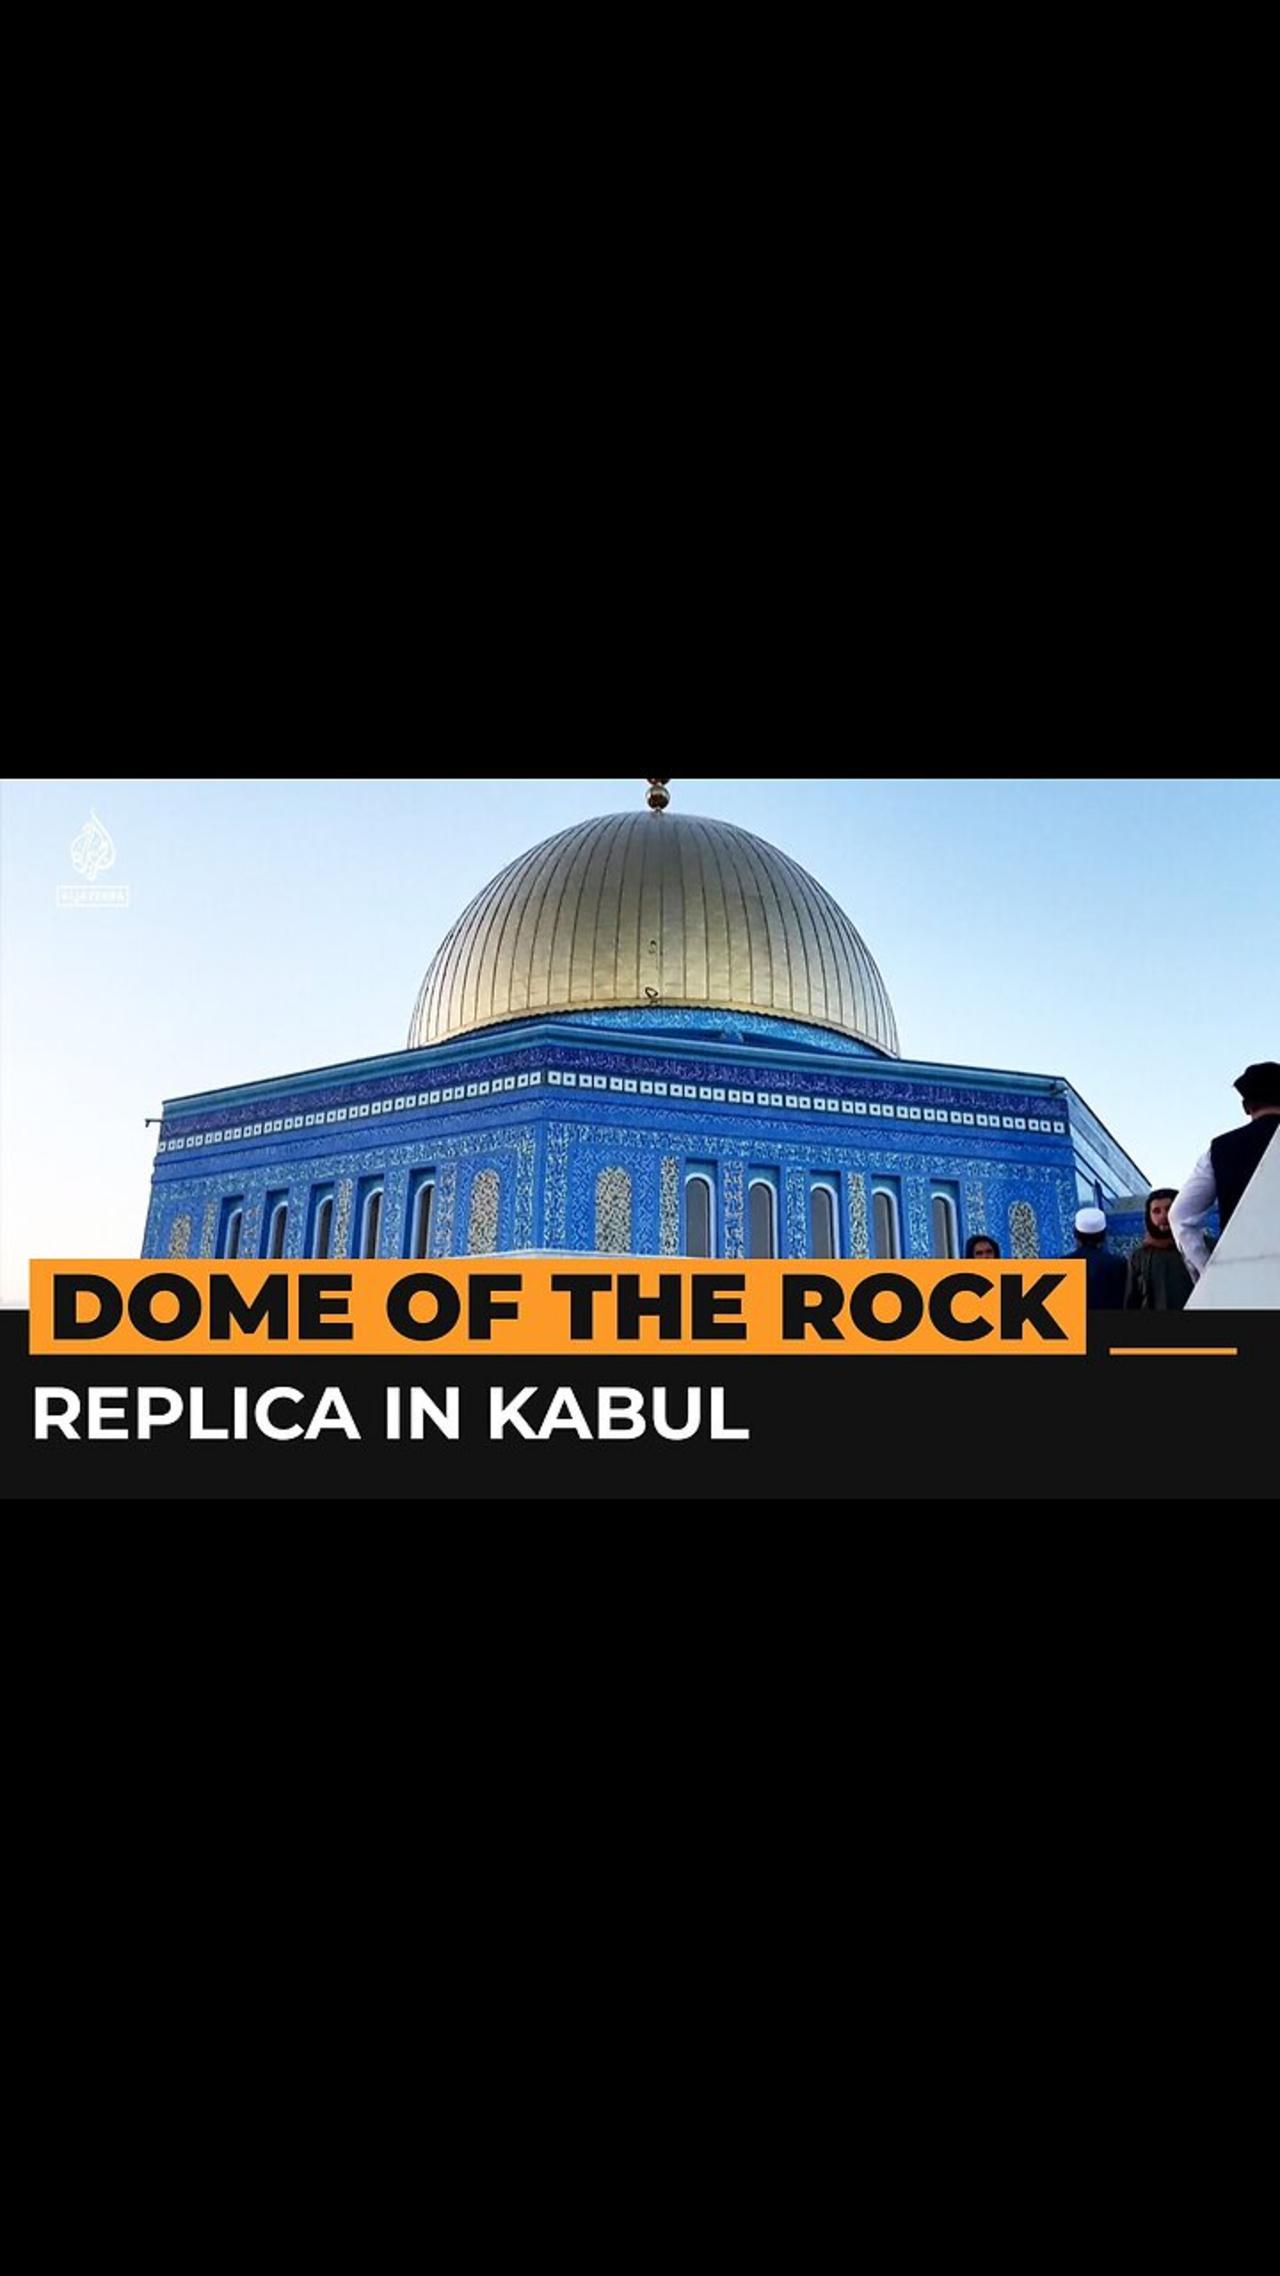 Dome of the Rock replica unveiled in Kabul - Al Jazeera Newsfeed